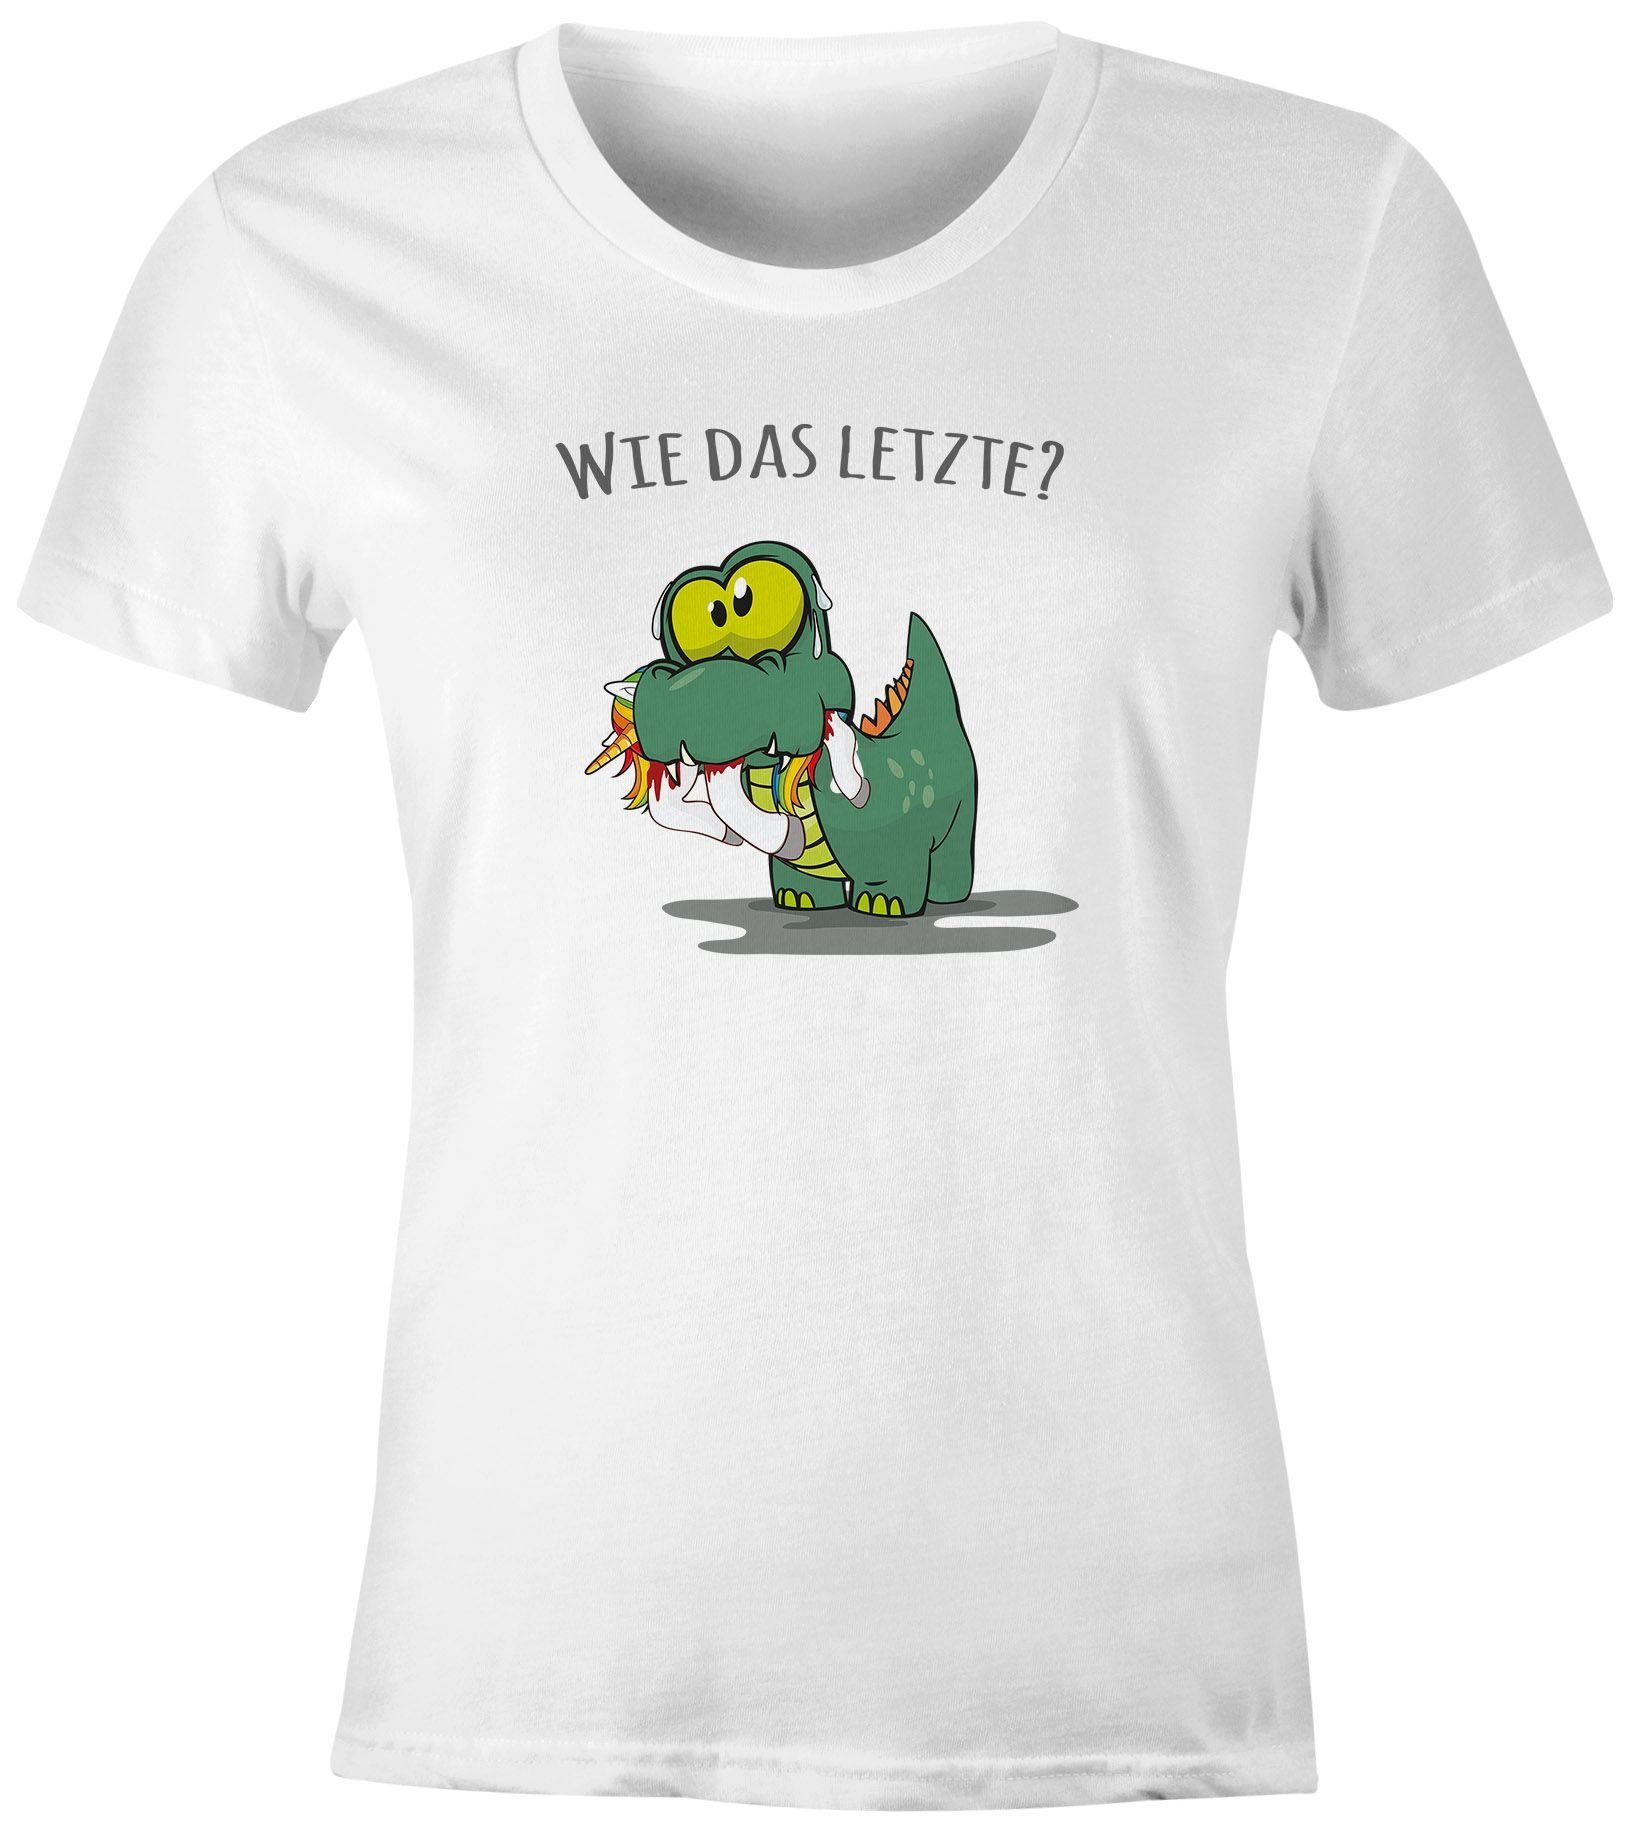 Damen Print-Shirt Spruch "Wie Fun-Shirt frisst lustig Print mit kleiner Dino Moonworks® T-Shirt Motiv das Letzte?" Fun Einhorn MoonWorks